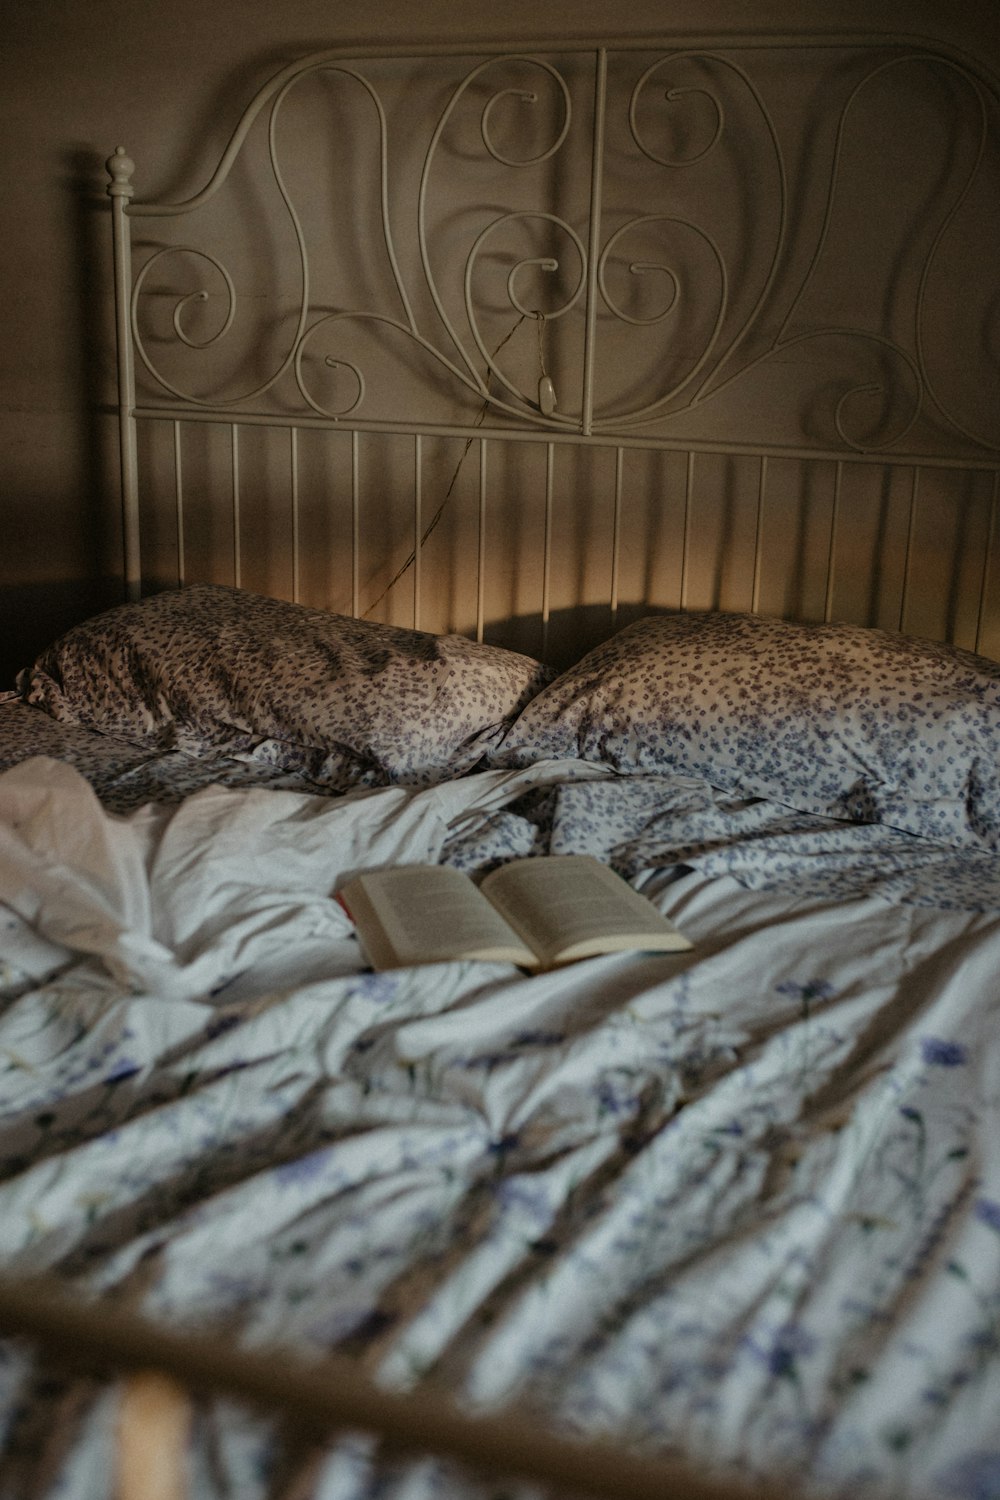 펼쳐진 책이 지저분한 침대 위에 놓여 있다